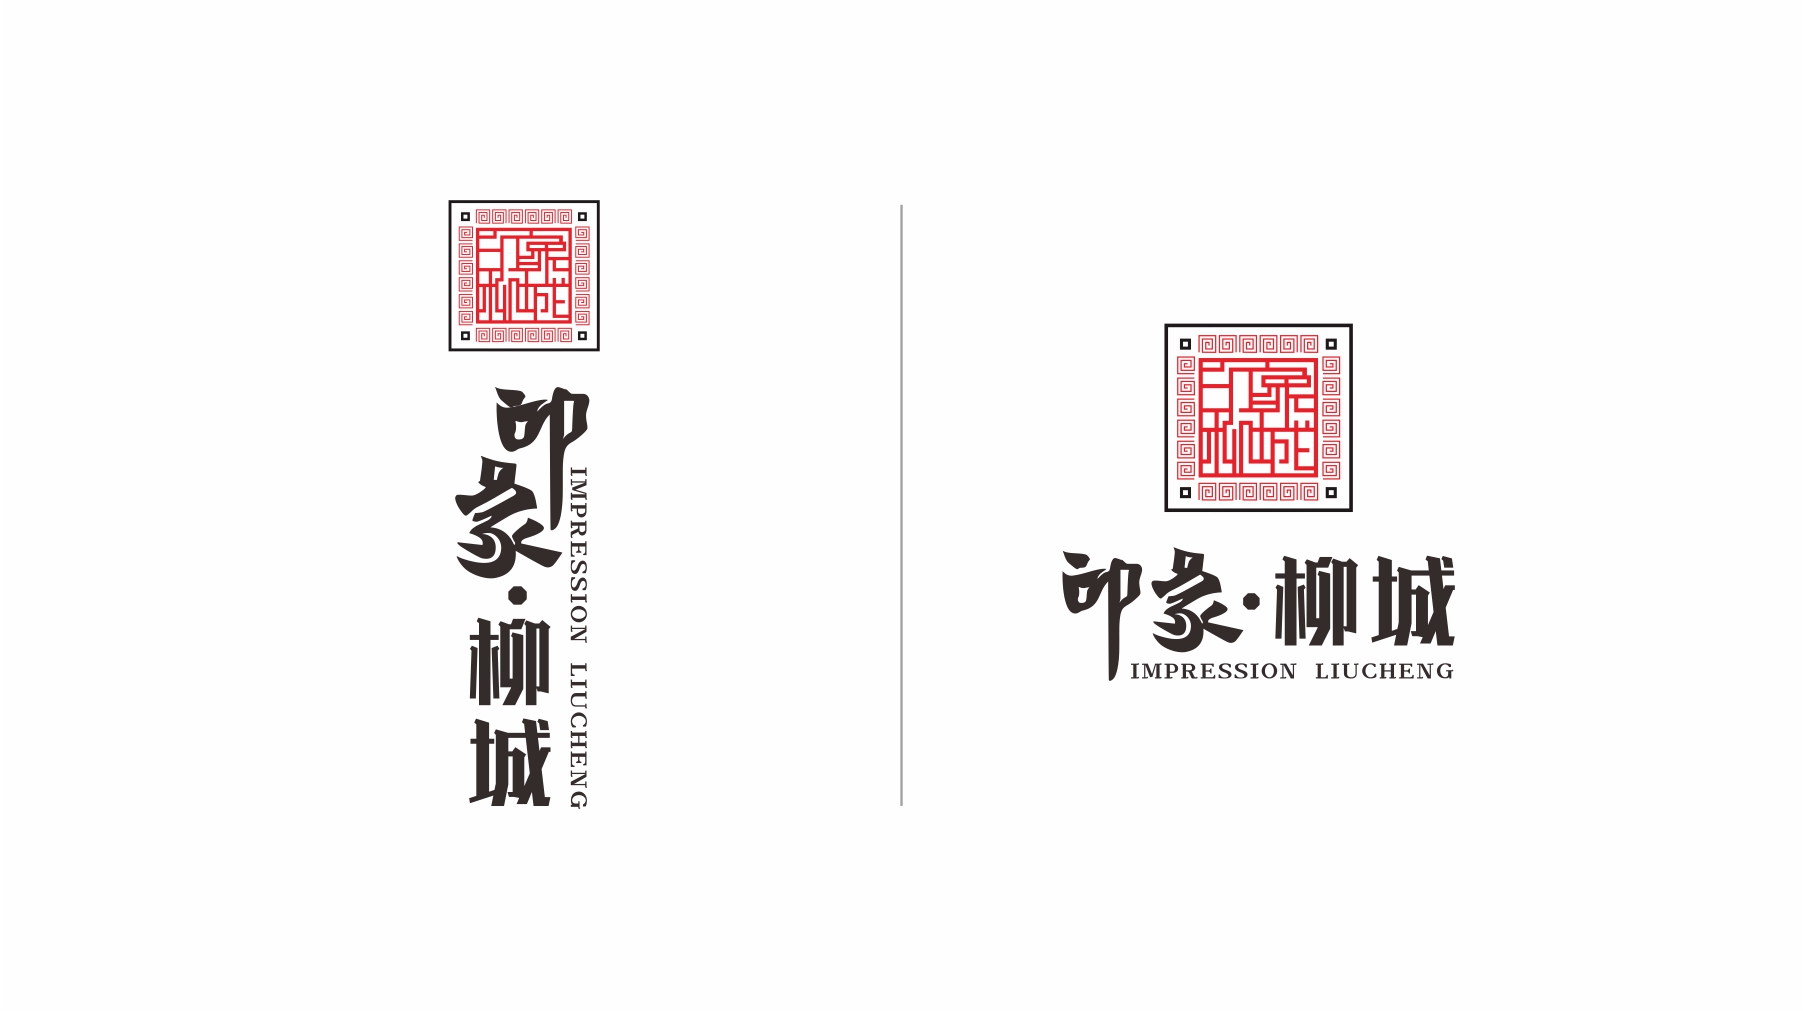 印象柳城螺蛳粉logo组合形式